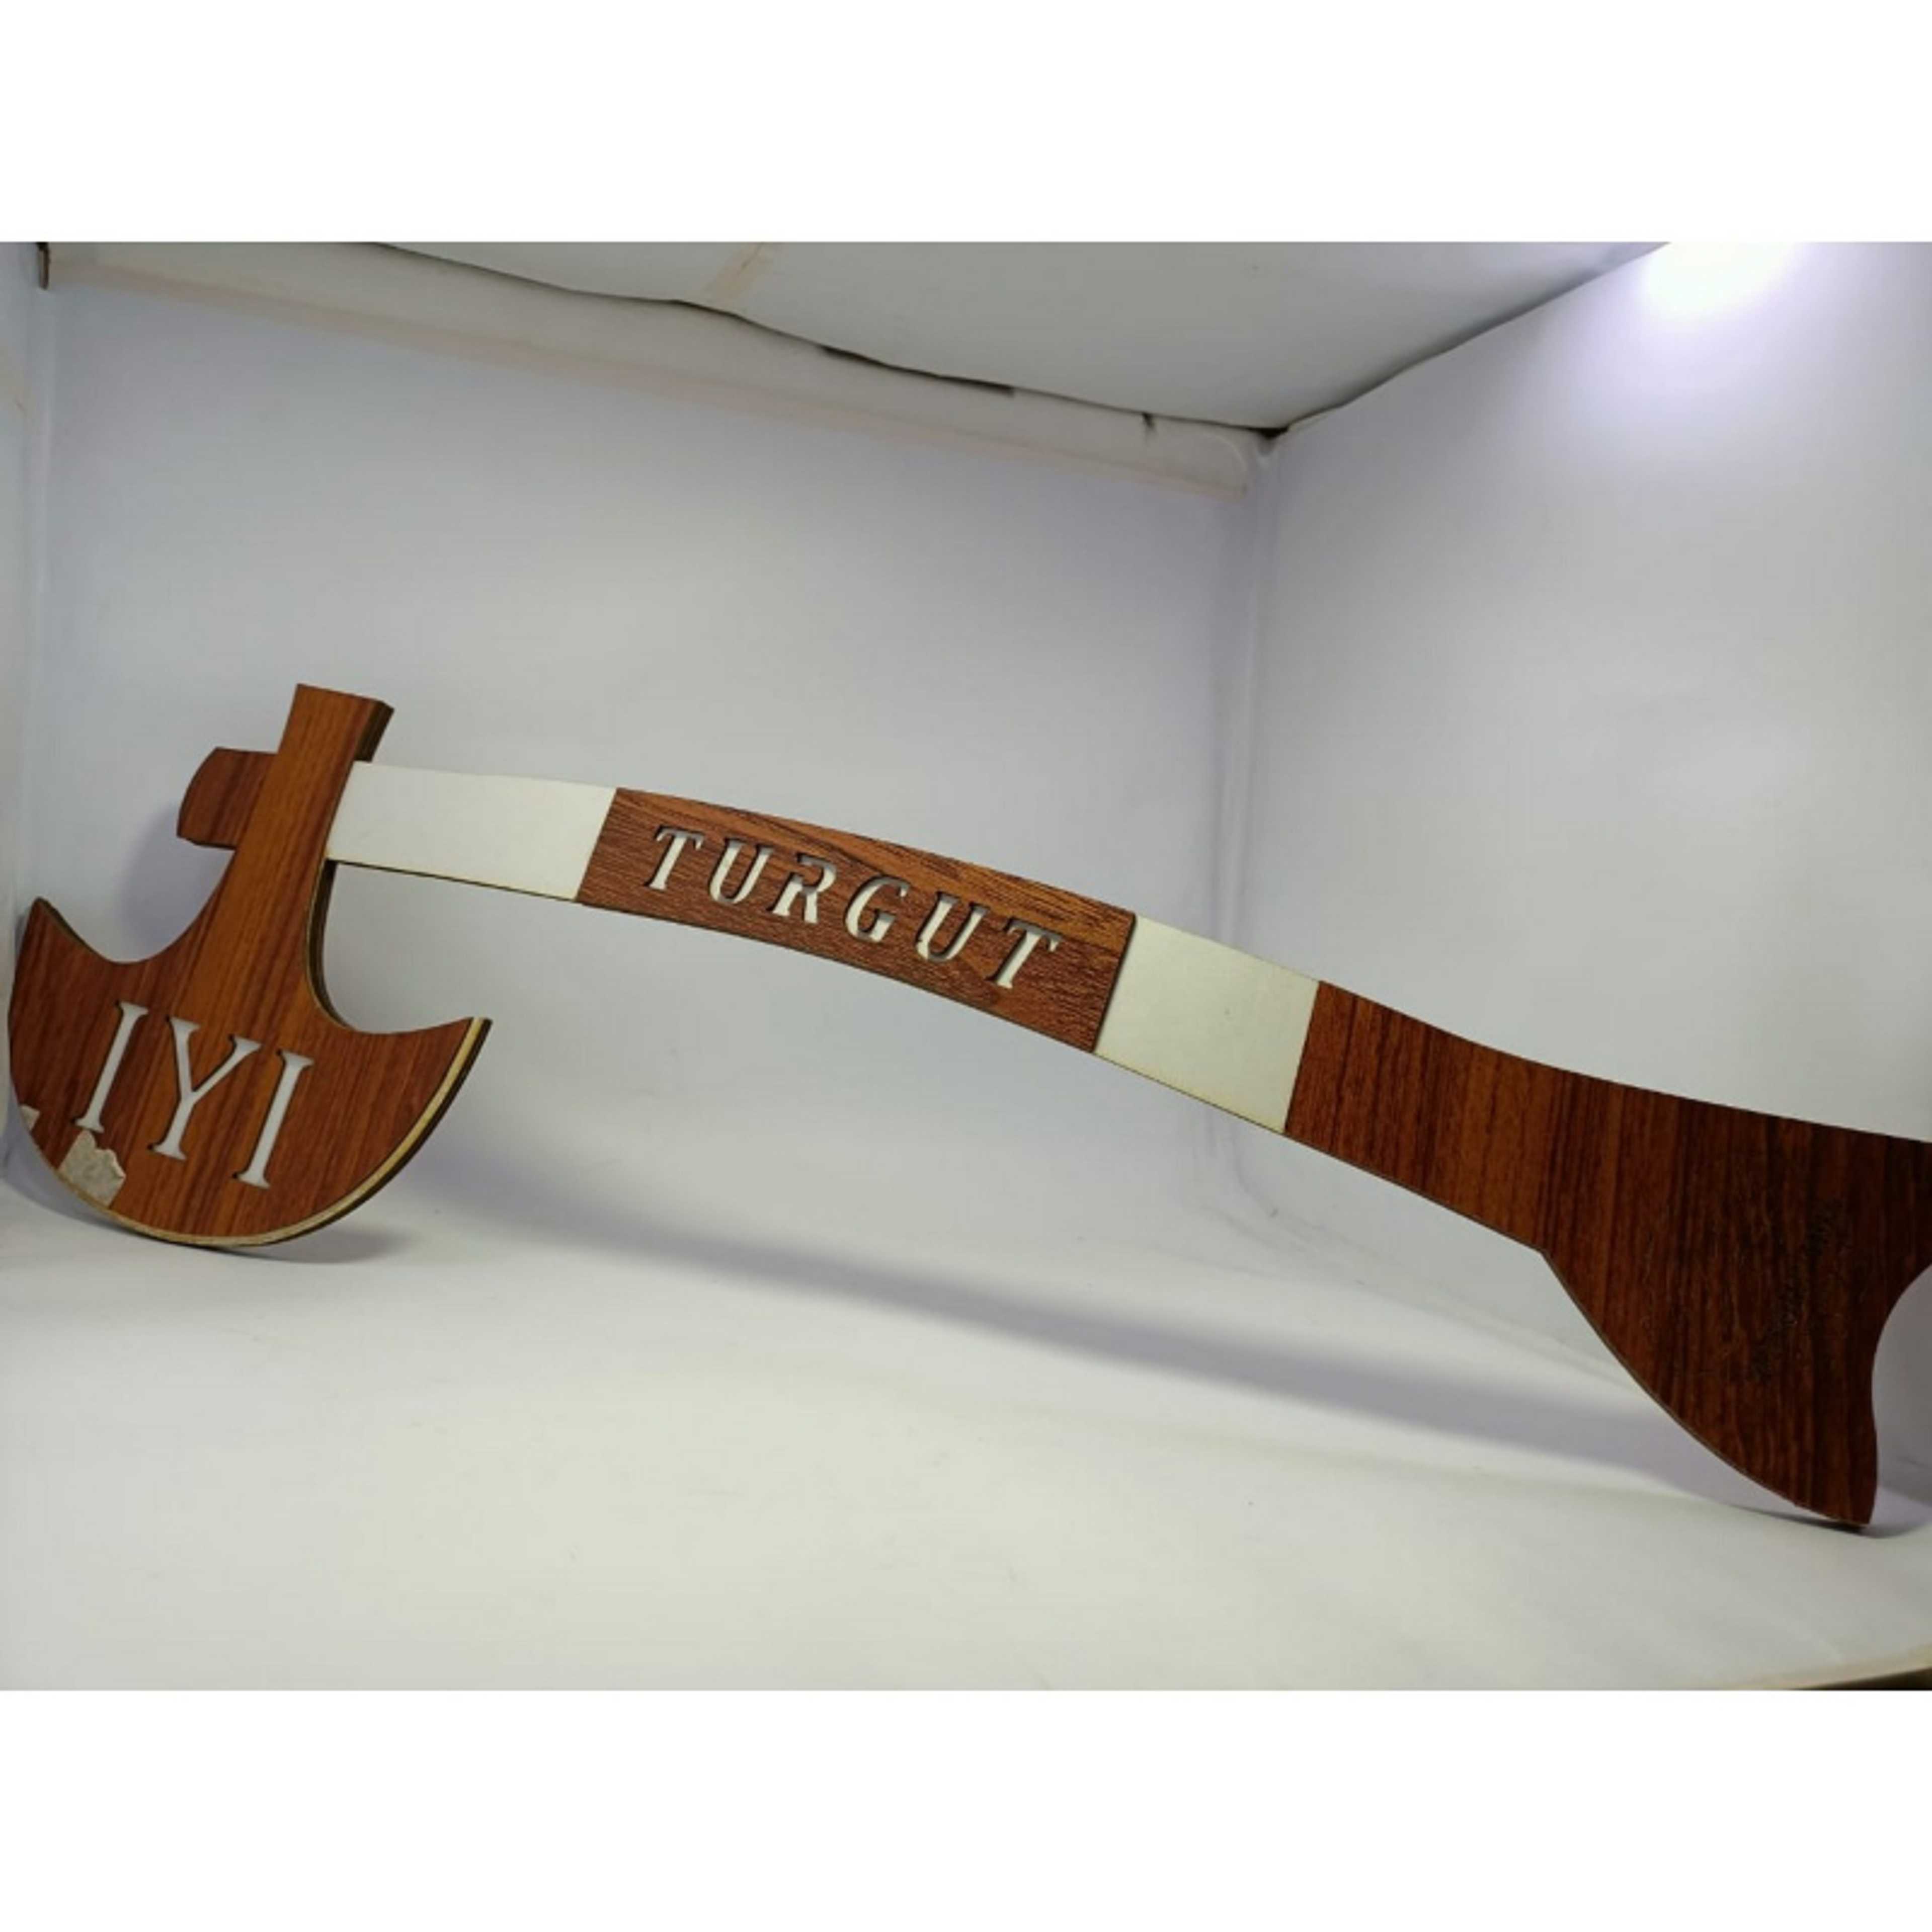 Turgut wooden axe (toy)